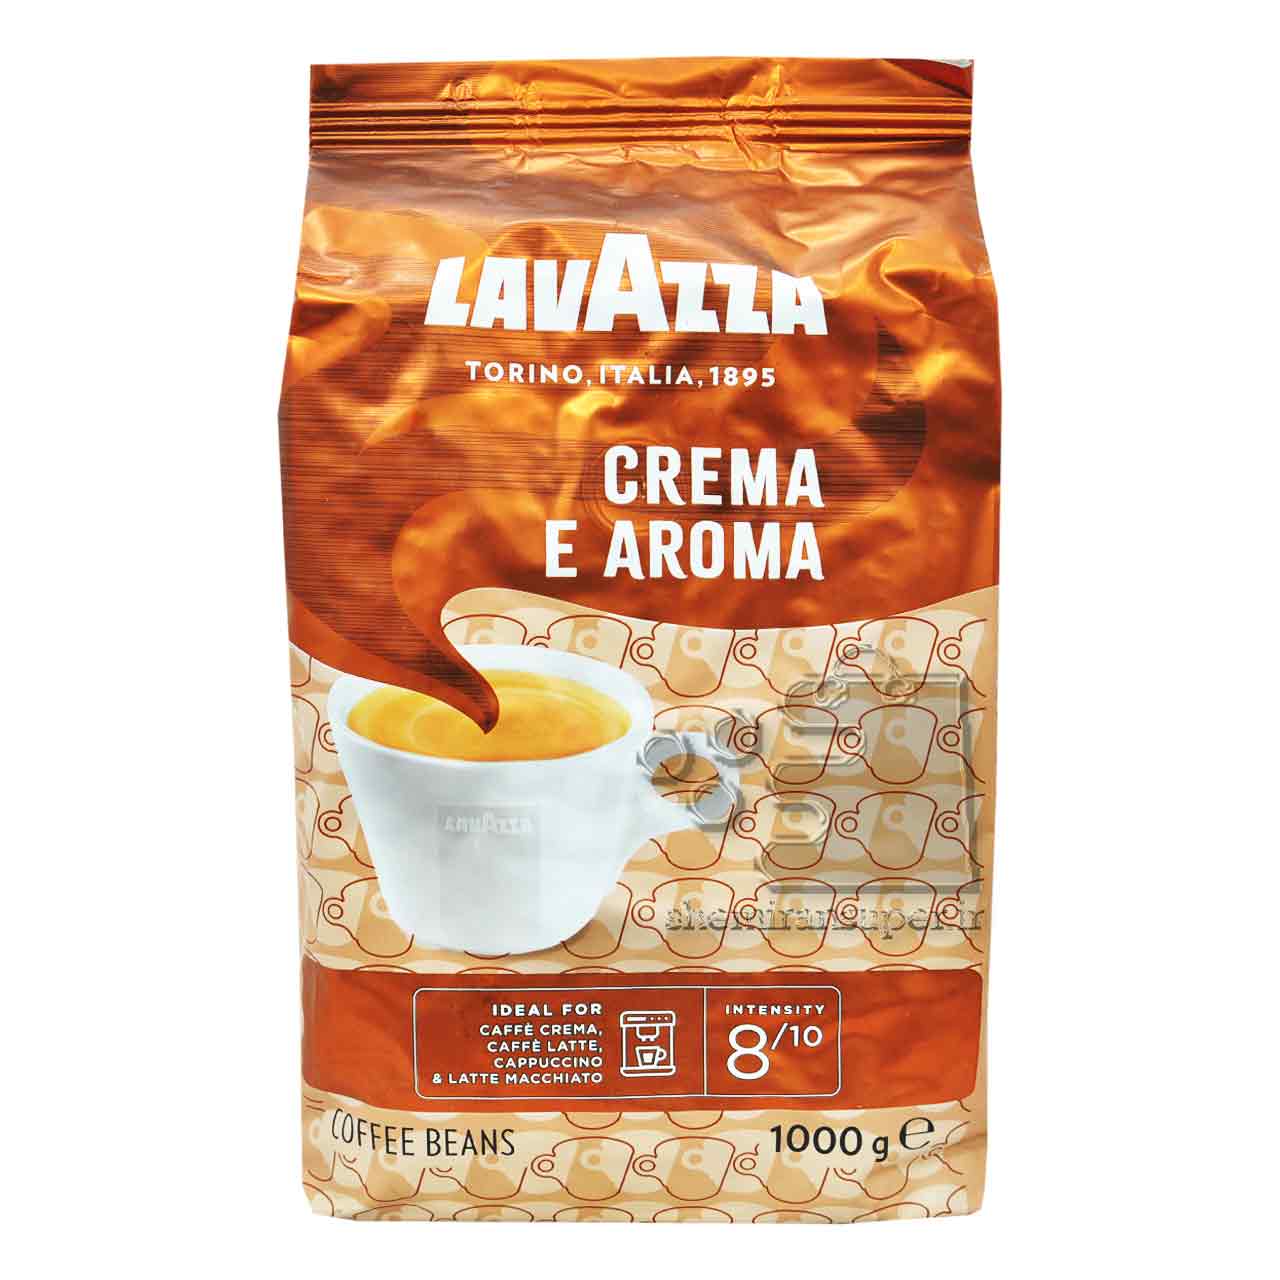 قهوه لاواتزا کرما آروما Crema E Aroma یک کیلویی